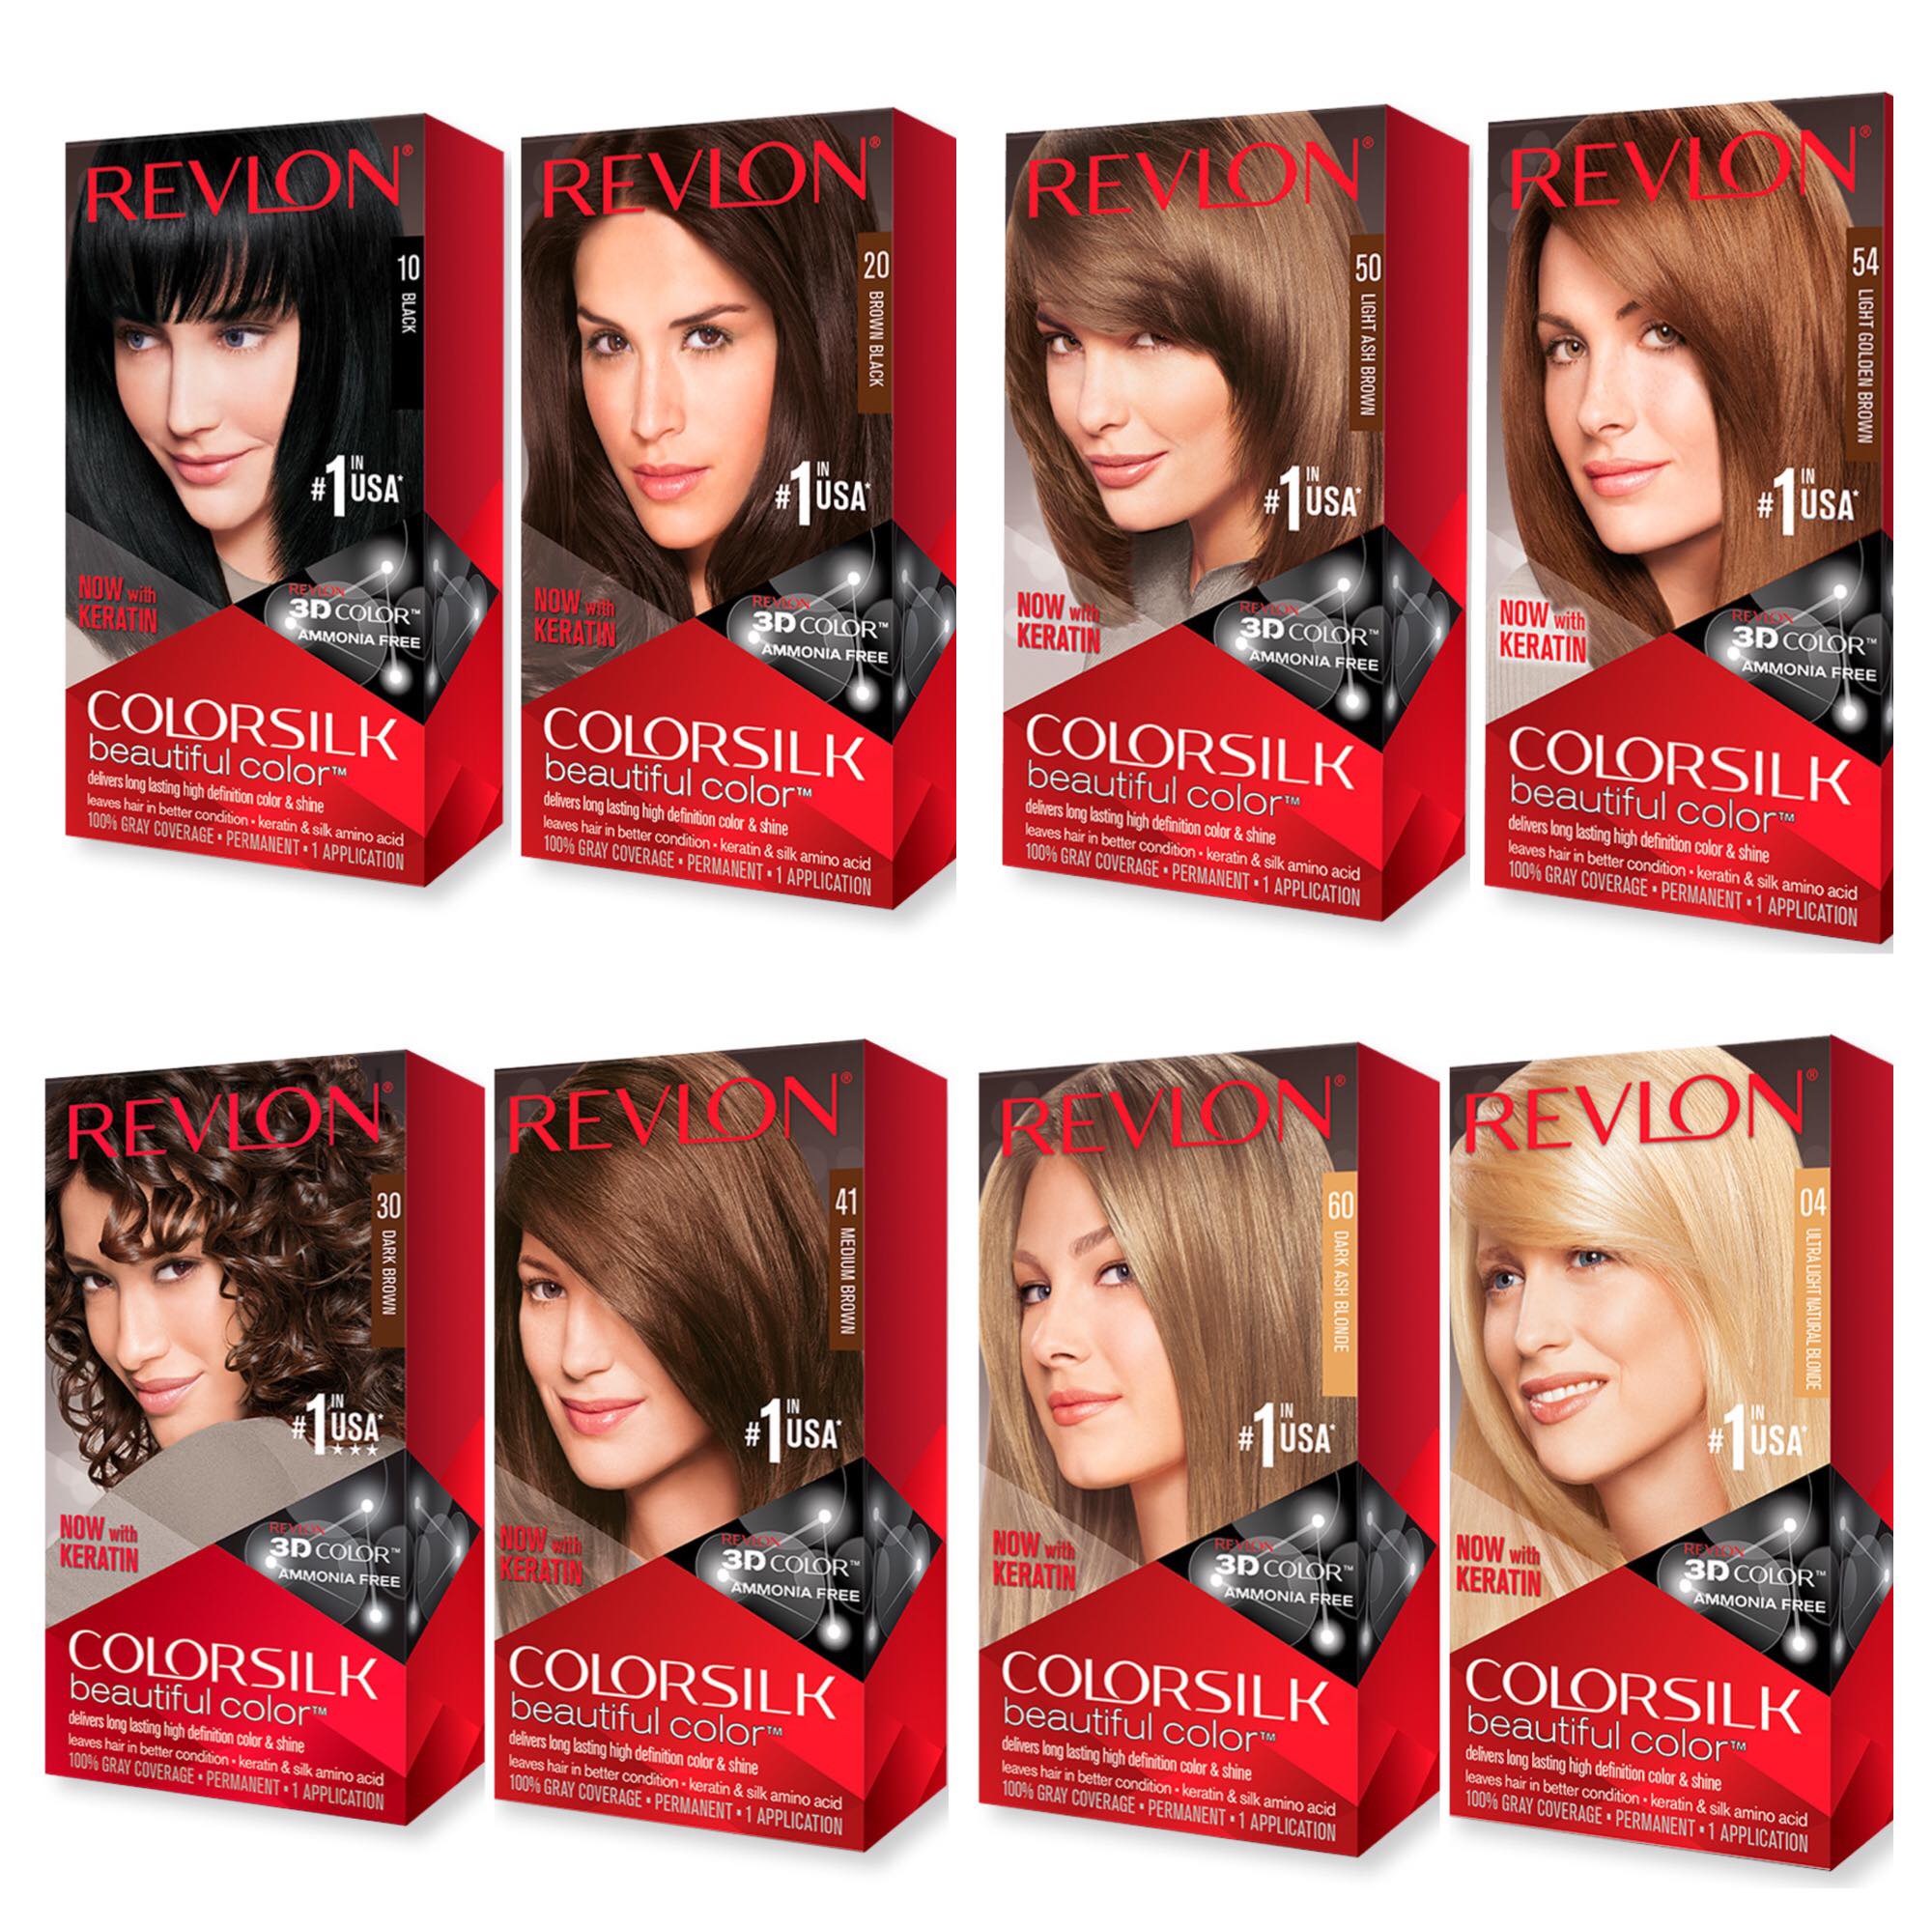 Thuốc nhuộm Revlon Colorsilk là một trong những sản phẩm dành cho những tín đồ chăm sóc tóc. Với công thức độc đáo, nó mang lại cho bạn một màu sắc tuyệt đẹp và những sợi tóc bóng mượt, giúp bạn nổi bật với phong cách sành điệu.